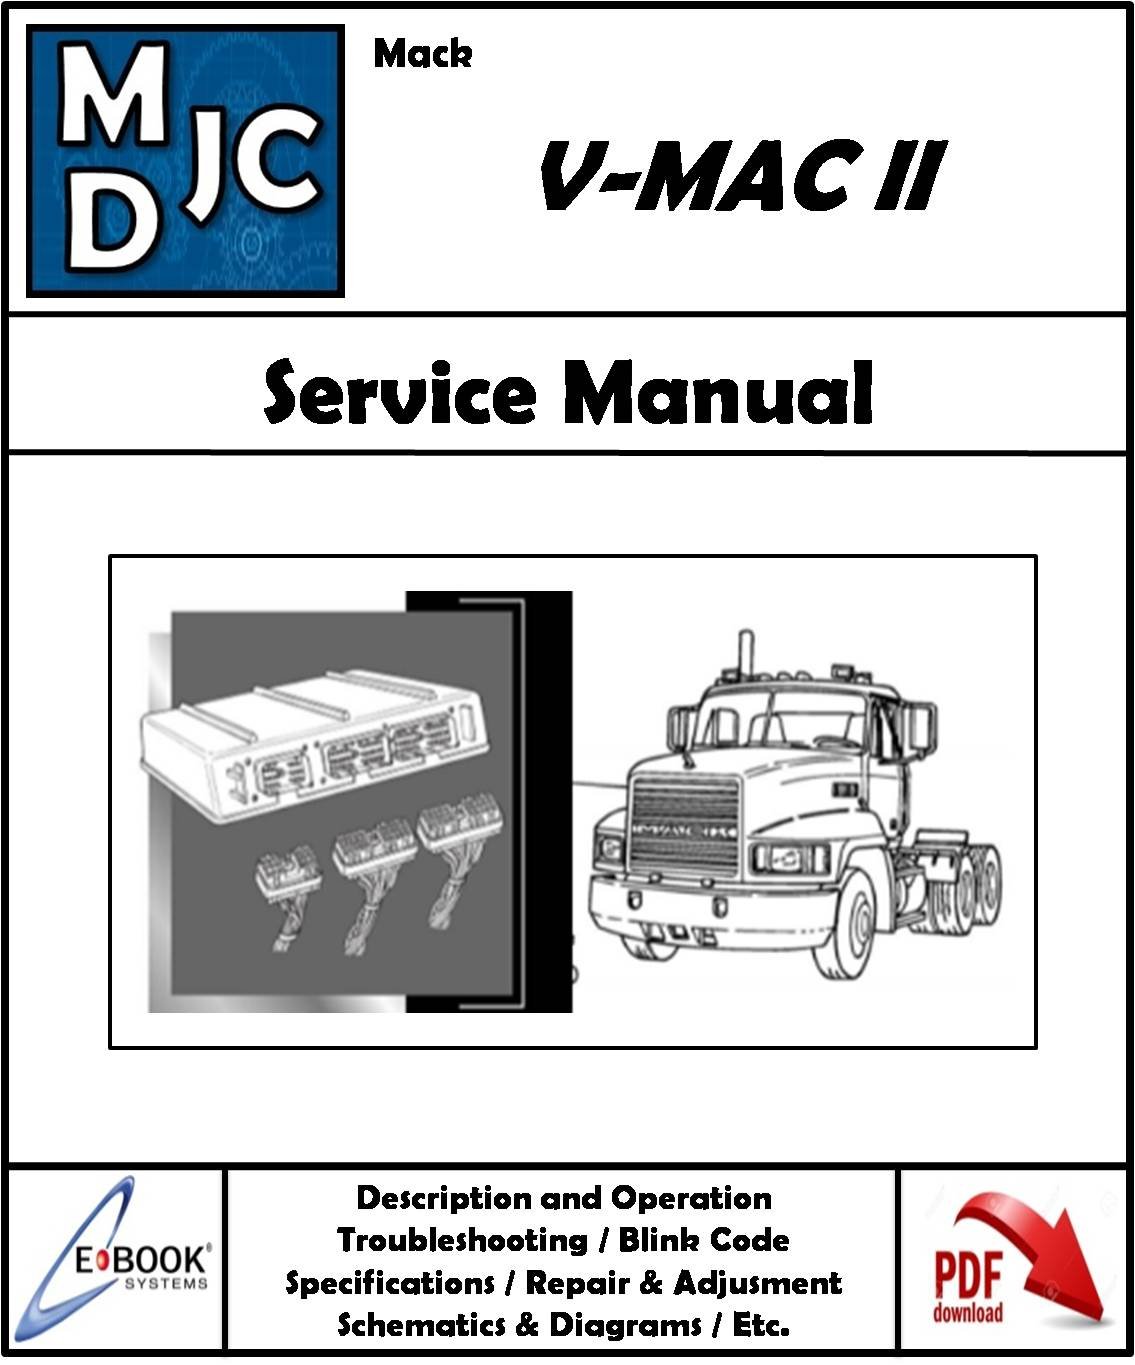 Mack V-MAC II